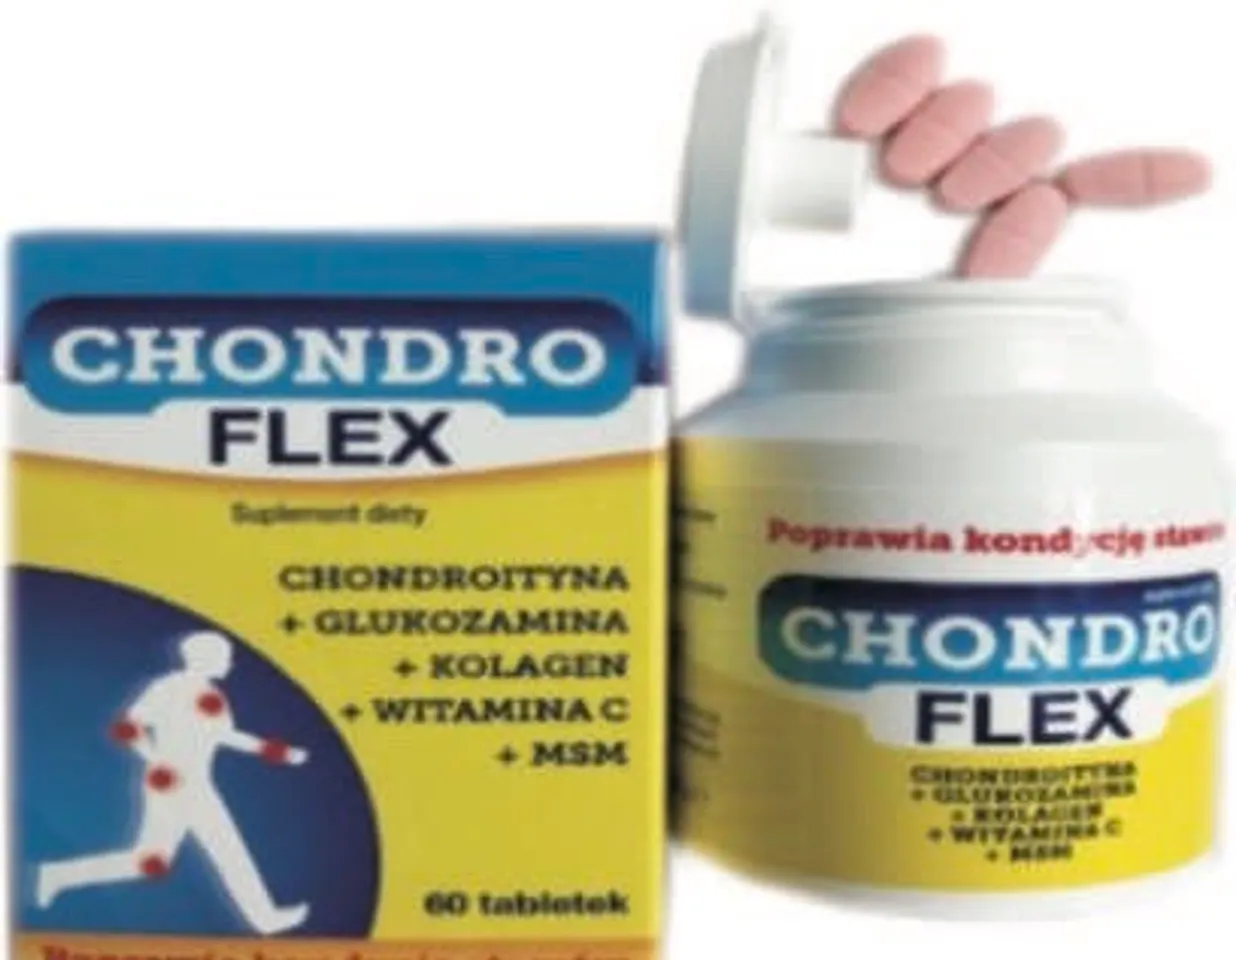 Viên uống hỗ trợ xương khớp Chondro flex hàng nhập khẩu chính hãng 1